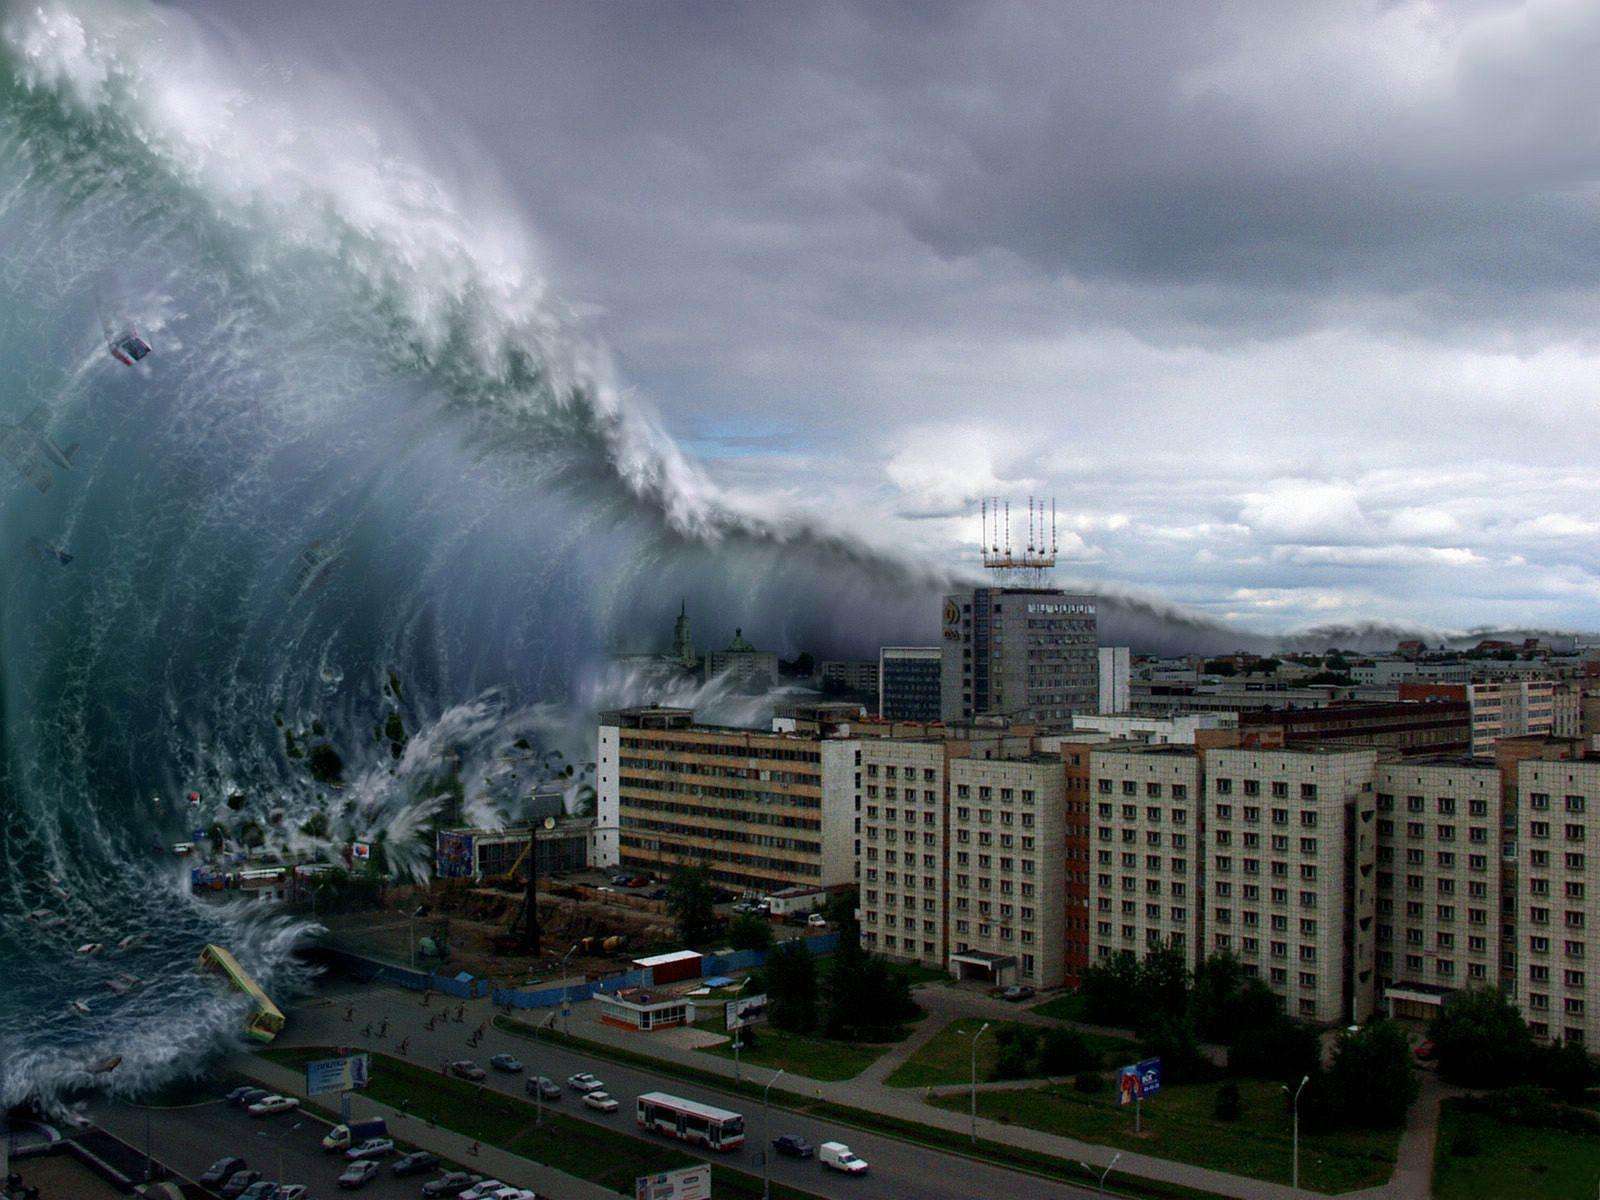 海啸吓人图片